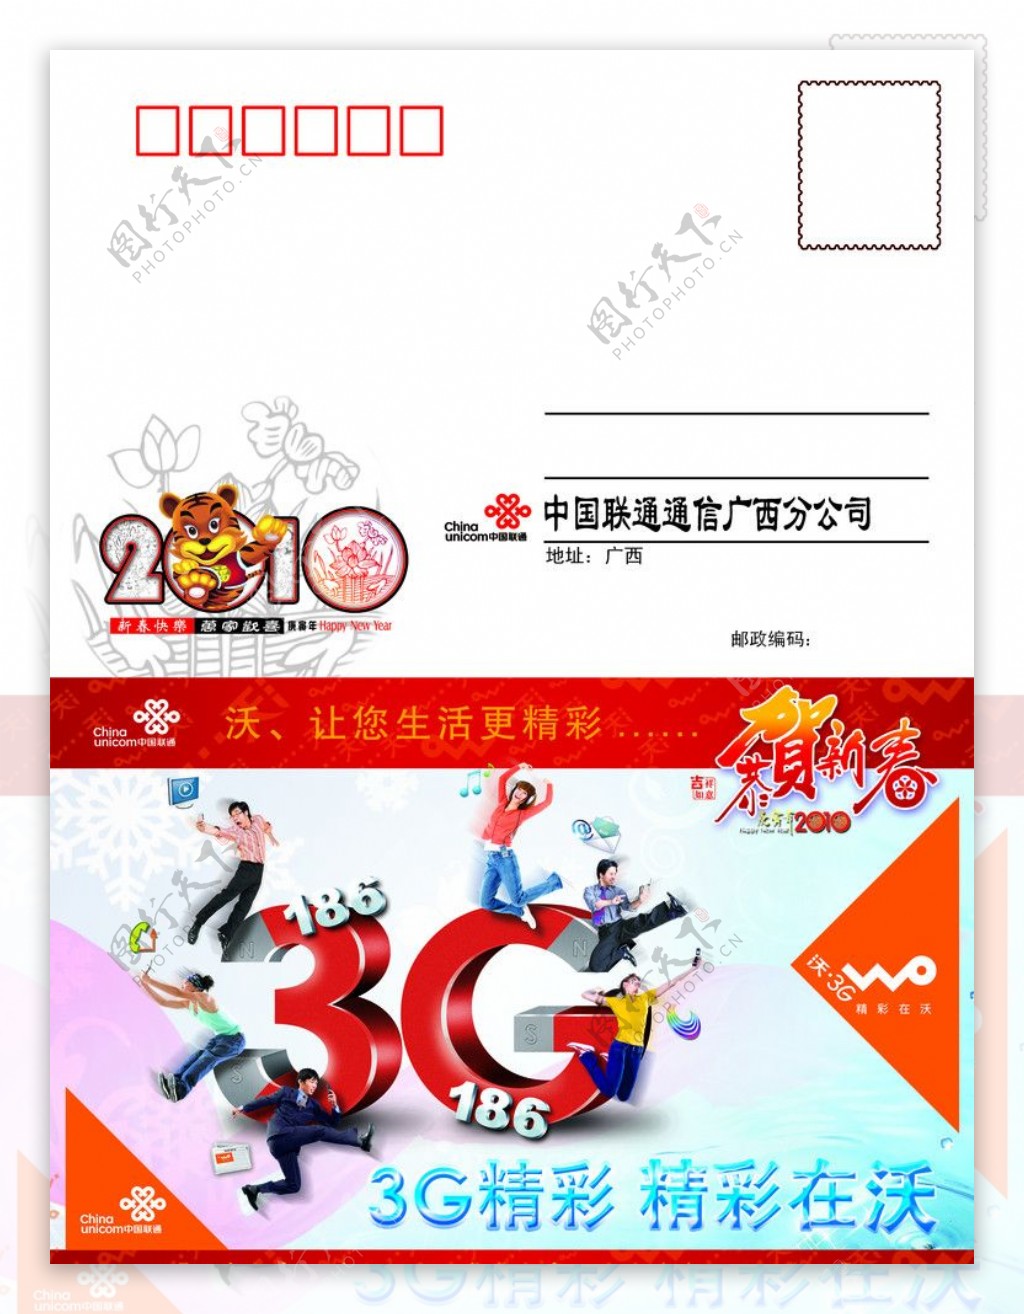 联通3G贺卡信卡图片